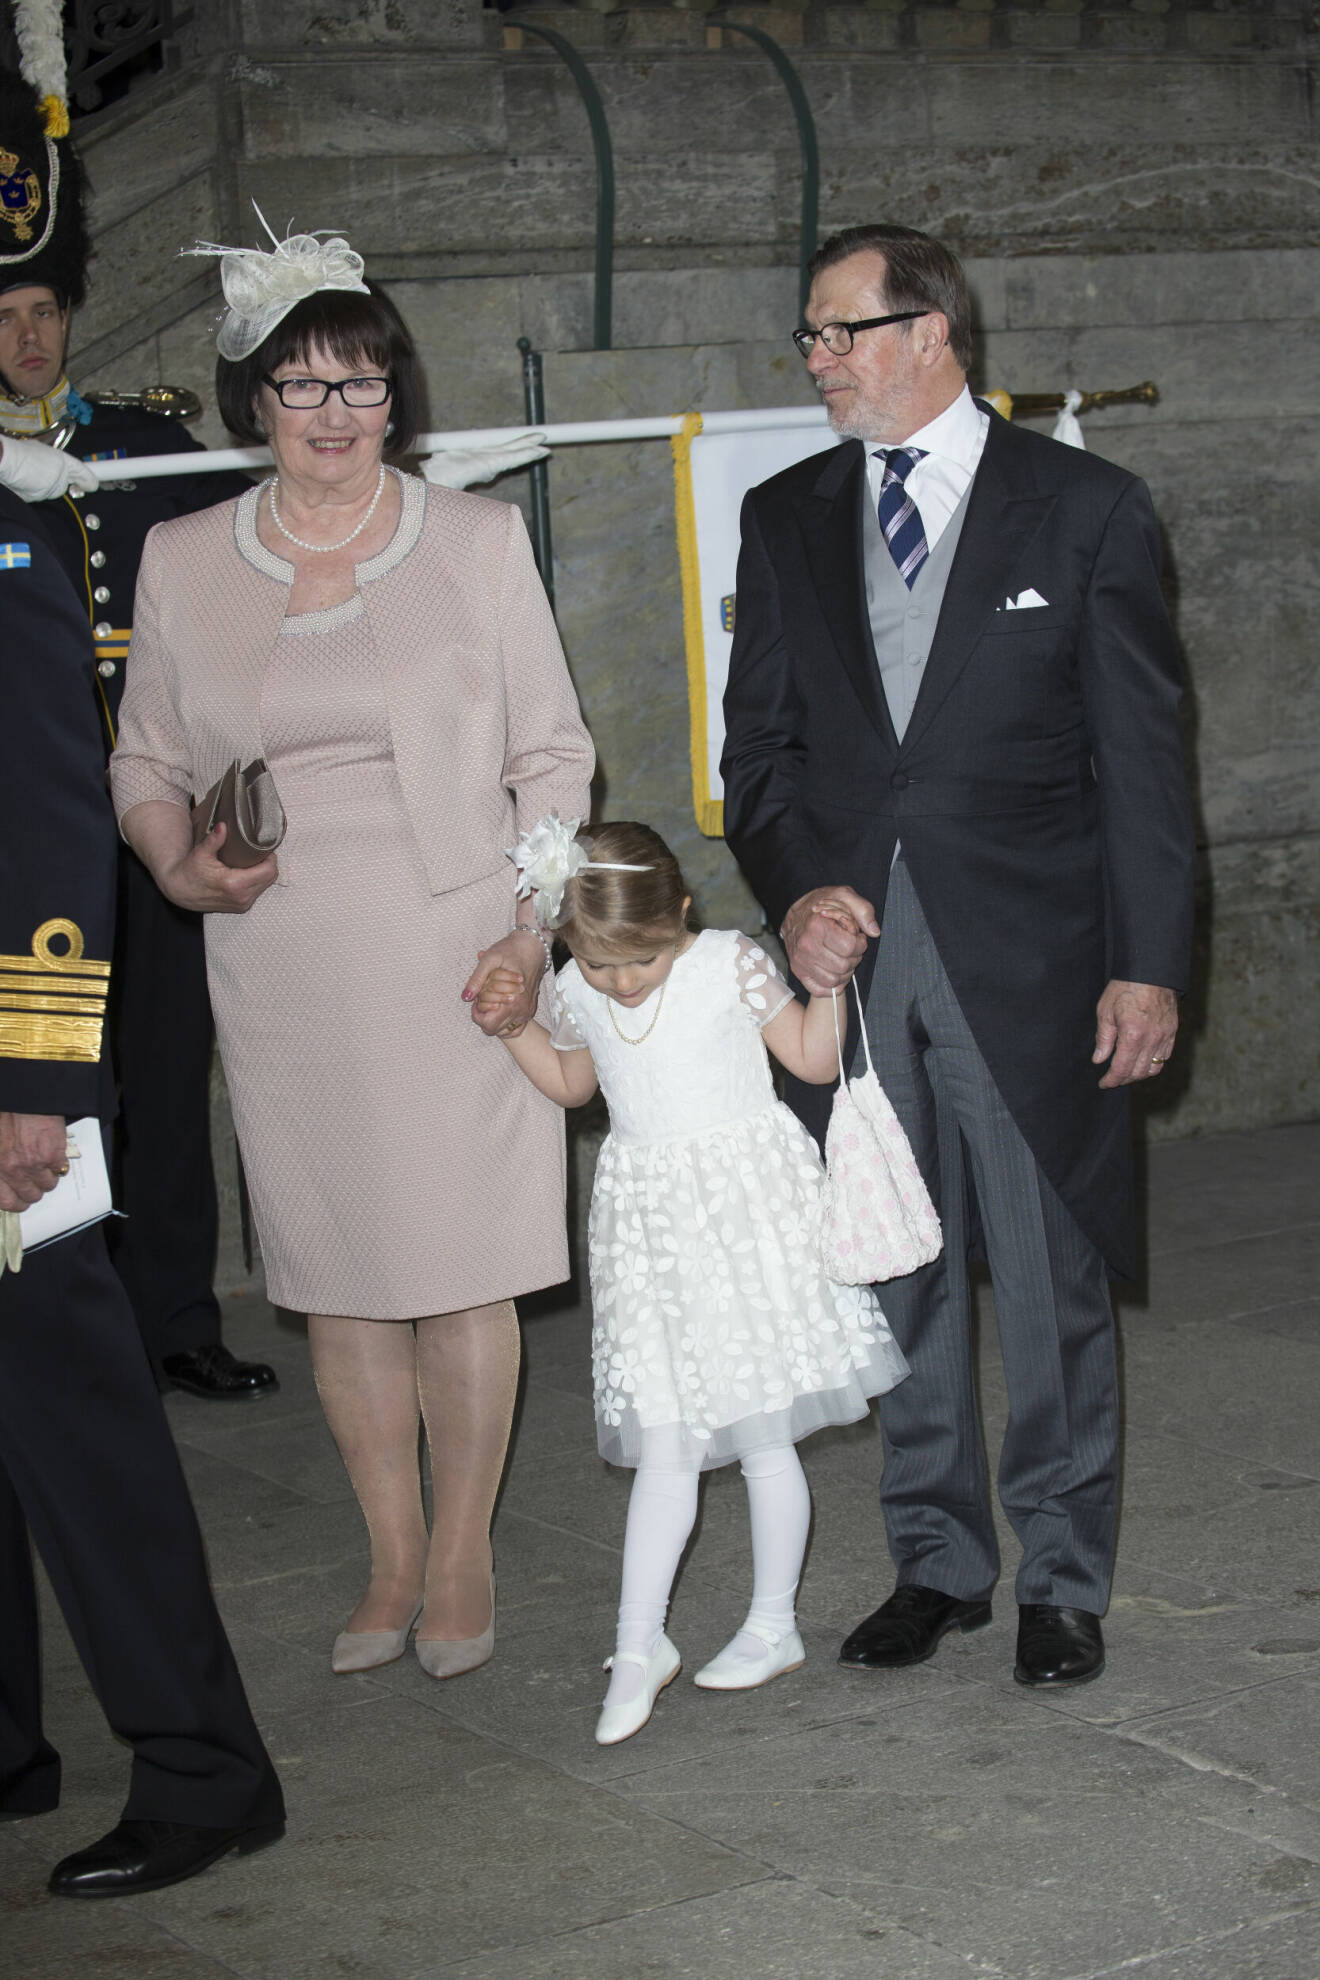 Ewa och Olle Westling håller prinsessan Estelle i handen